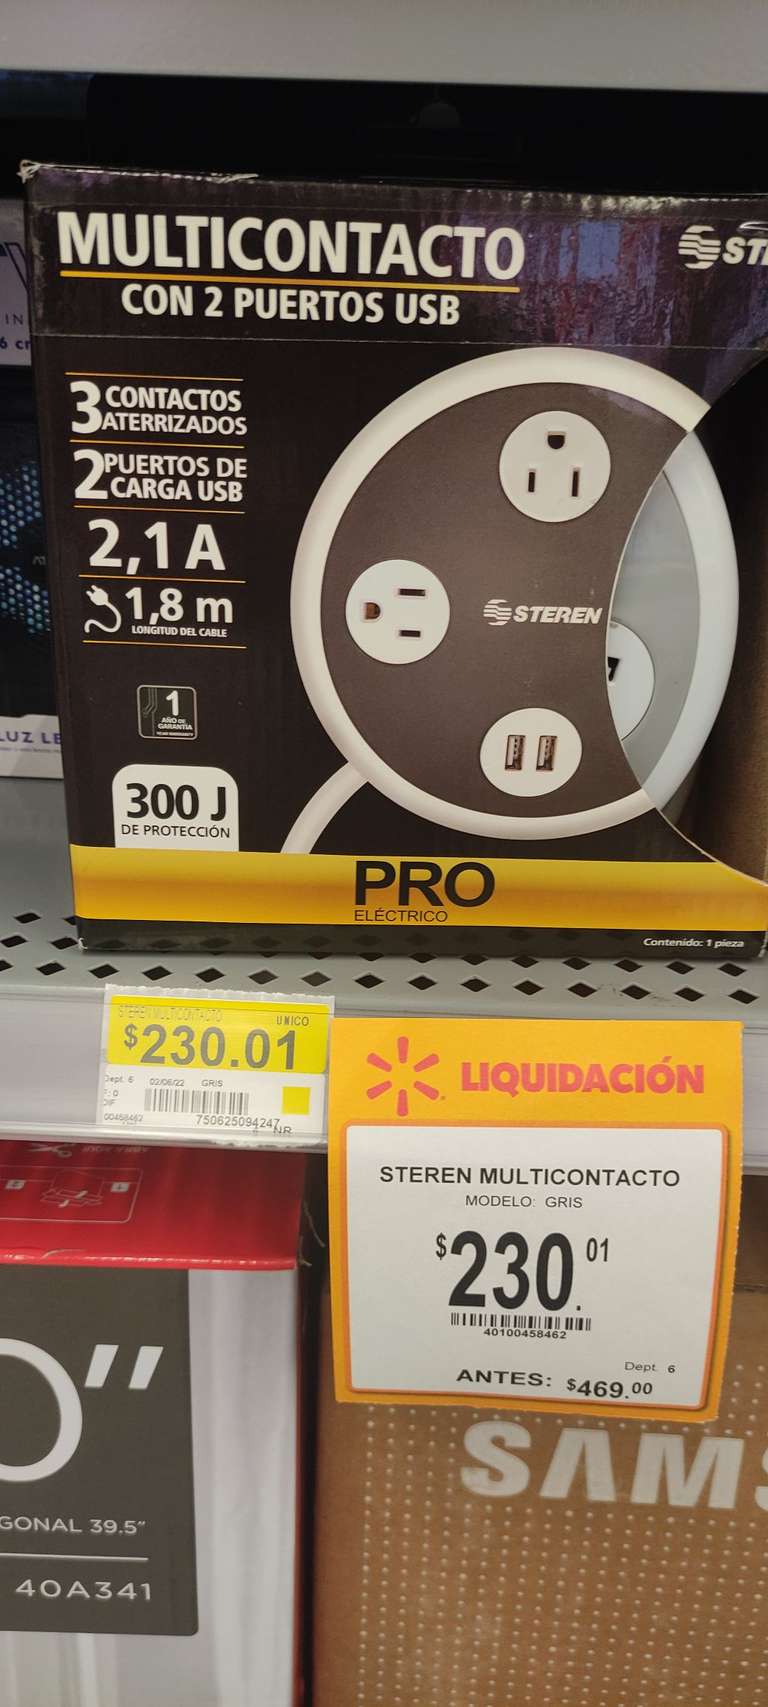 Walmart: Multicontacto Steren con 2 puertos USB